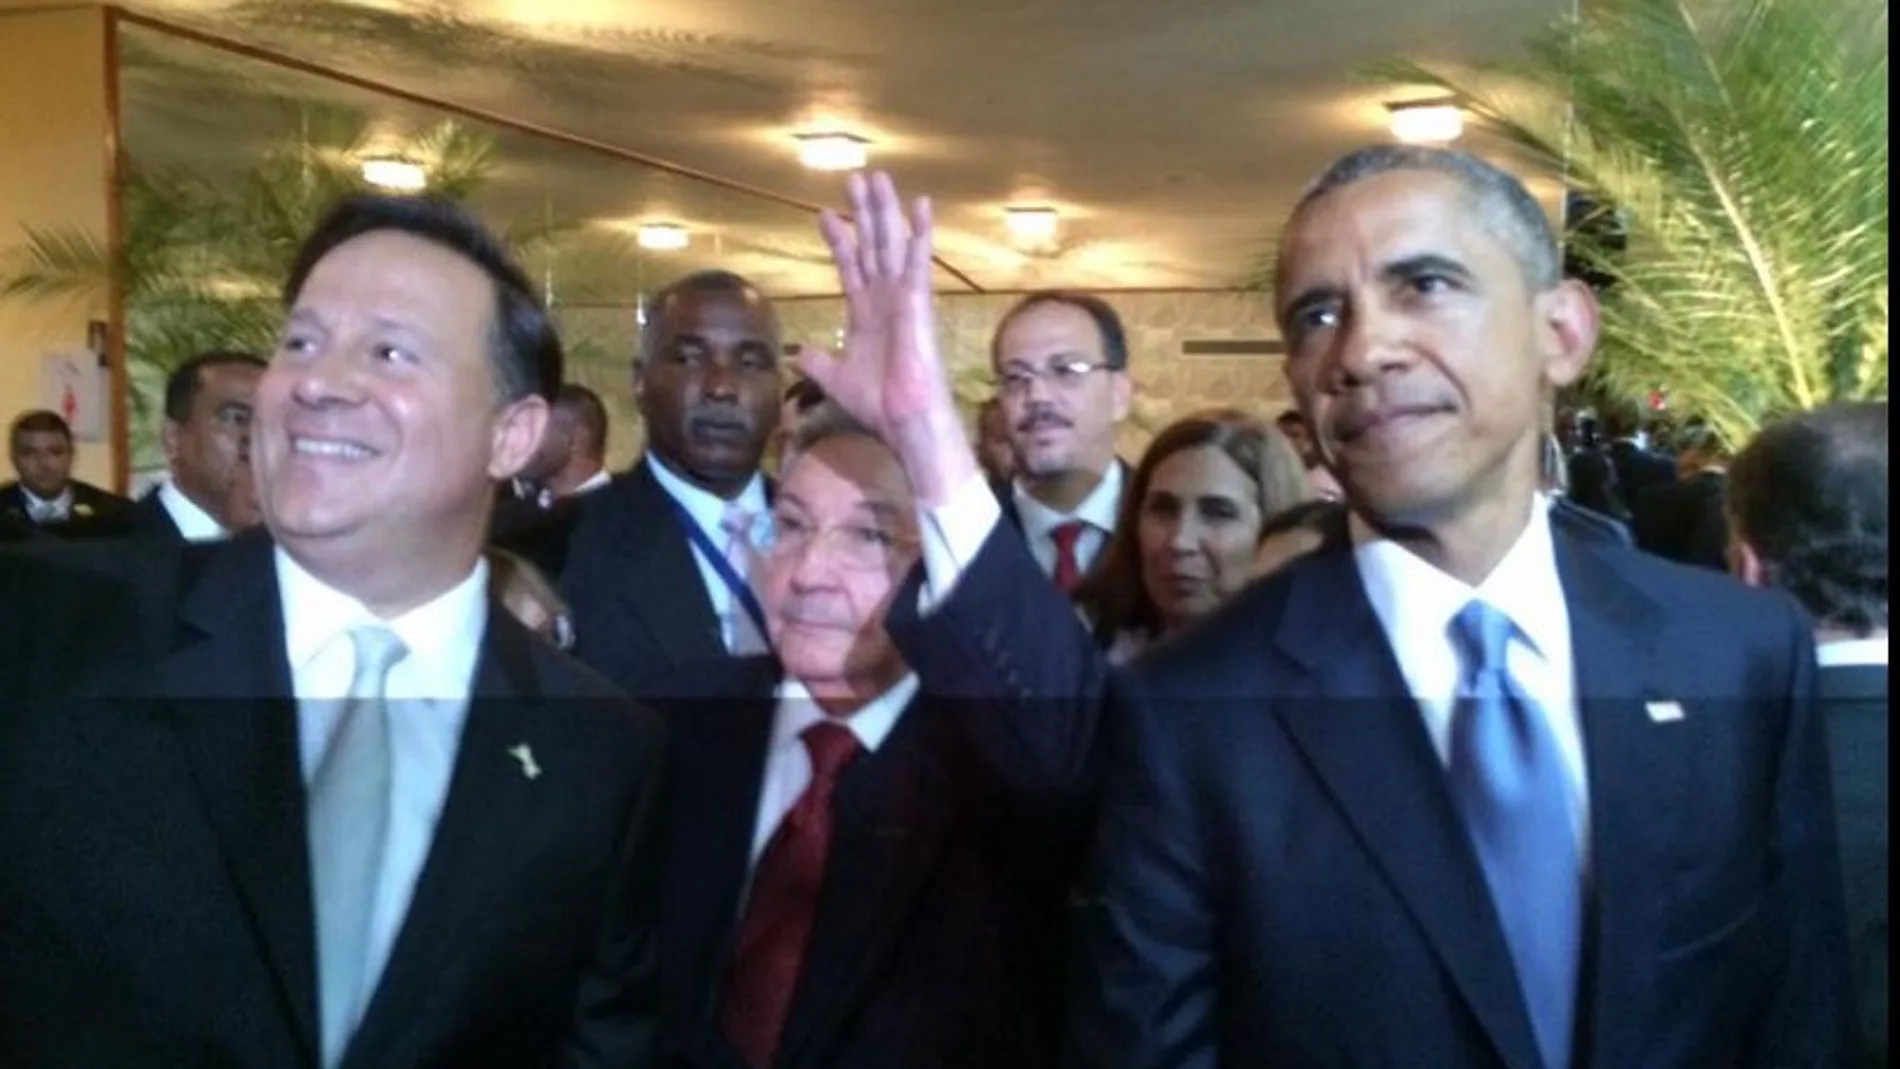 El presidente de EE.UU., Barack Obama, derecha, junto al presidente de CUba, Raúl Castro, centro, y el presidente de Panamá, Juan Carlos Varela, izquierda, al comienzo de la Cumbre